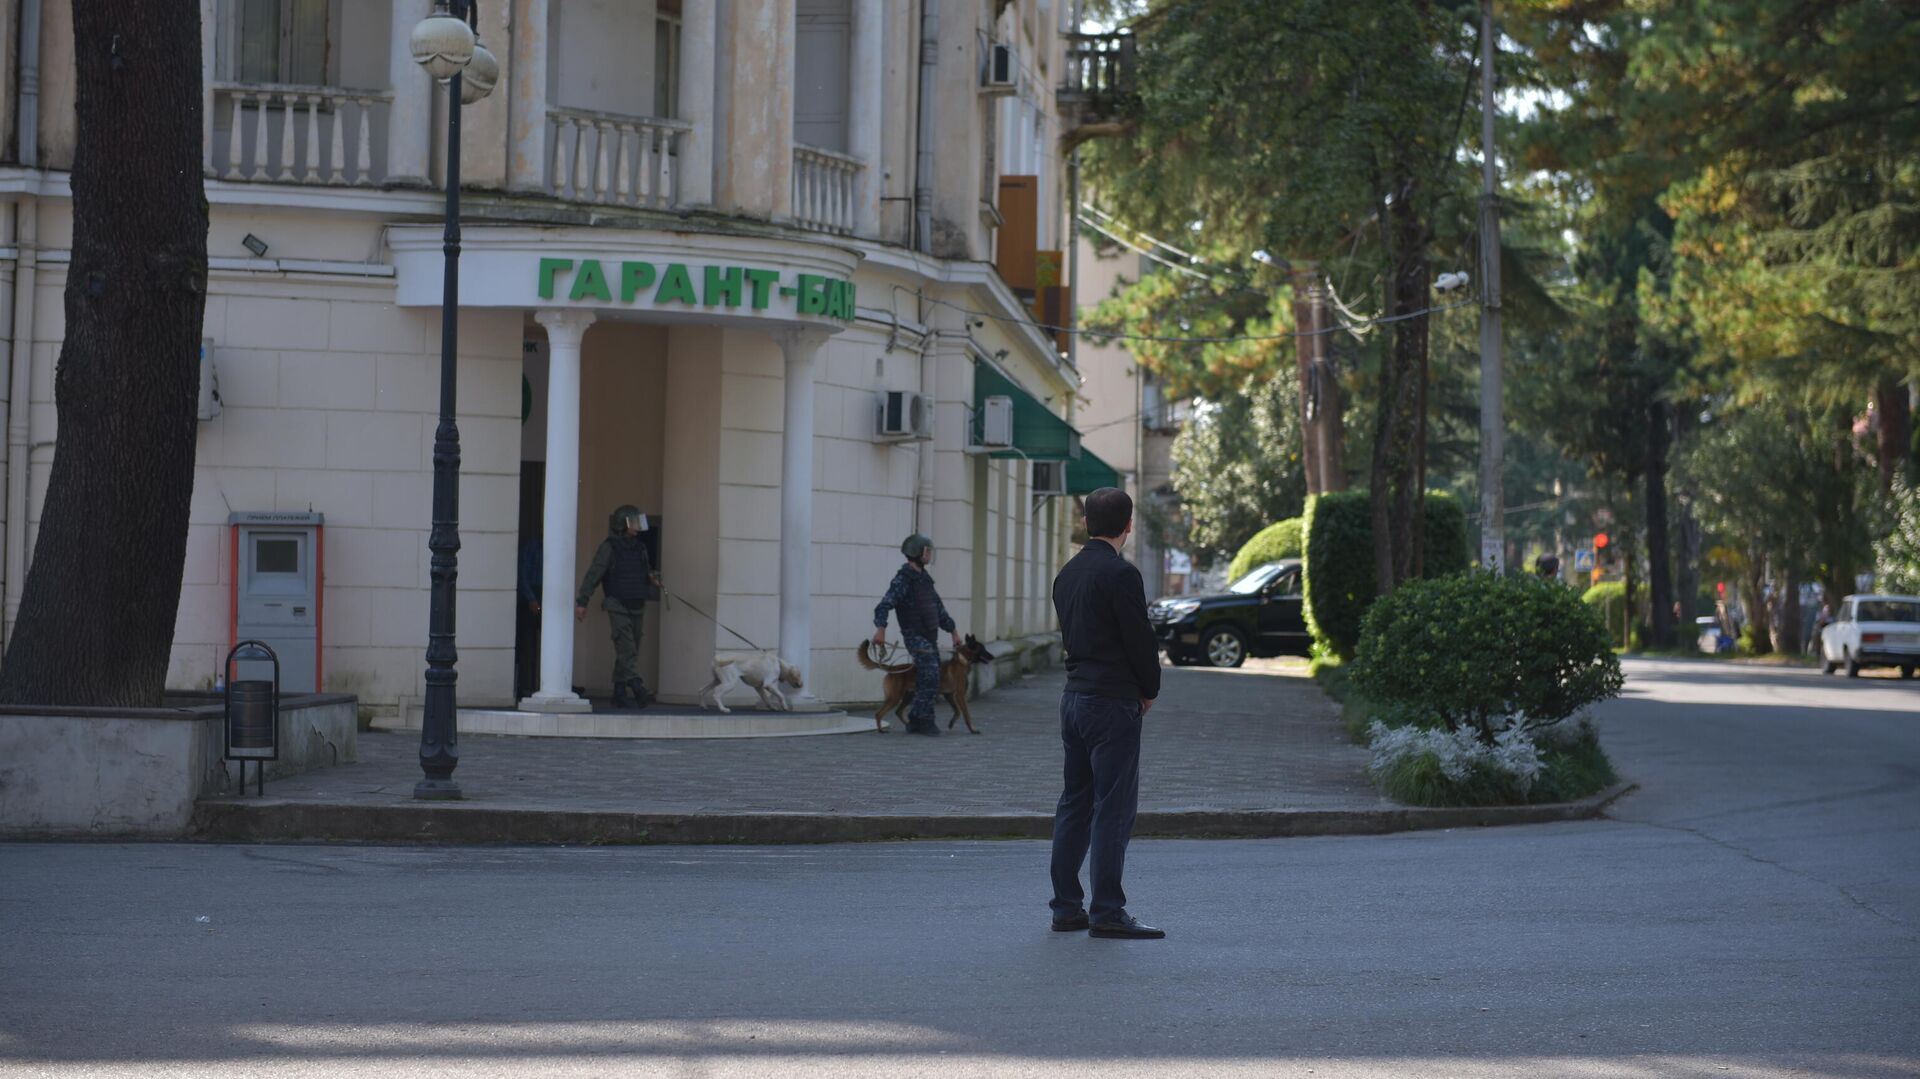 Гарант-Банк в Сухуме окружили сотрудники правоохранительных органов - Sputnik Абхазия, 1920, 13.10.2021